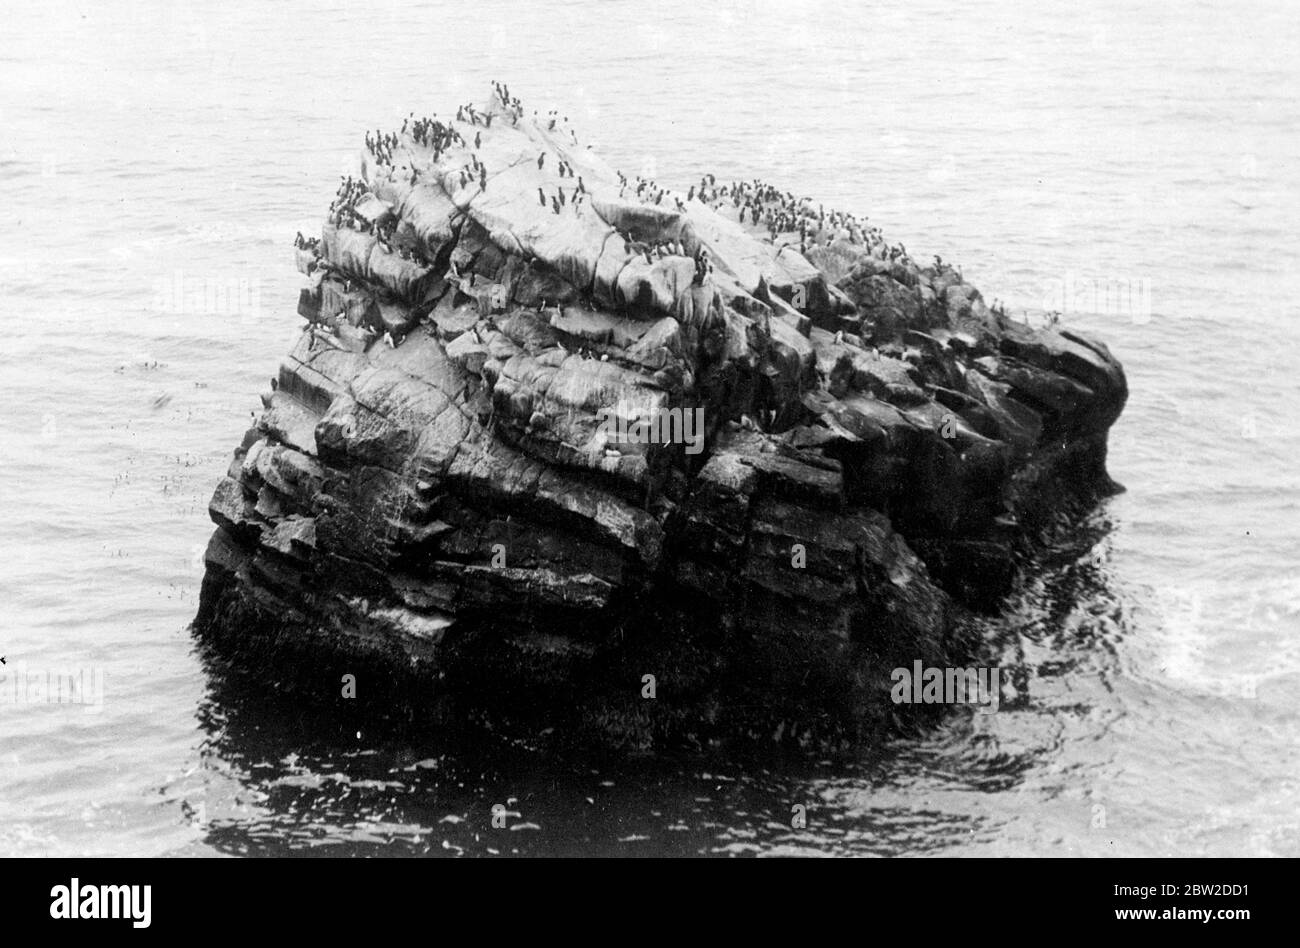 Una roccia grassa e solitaria, al largo della costa della Siberia bagnata dalle acque ghiacciate del Mare di Bering, colonizzato, da uccelli marini. Alcuni degli uccelli possono essere visti galleggiare sull'acqua mentre cercano i pesci. 24 ottobre 1938 Foto Stock